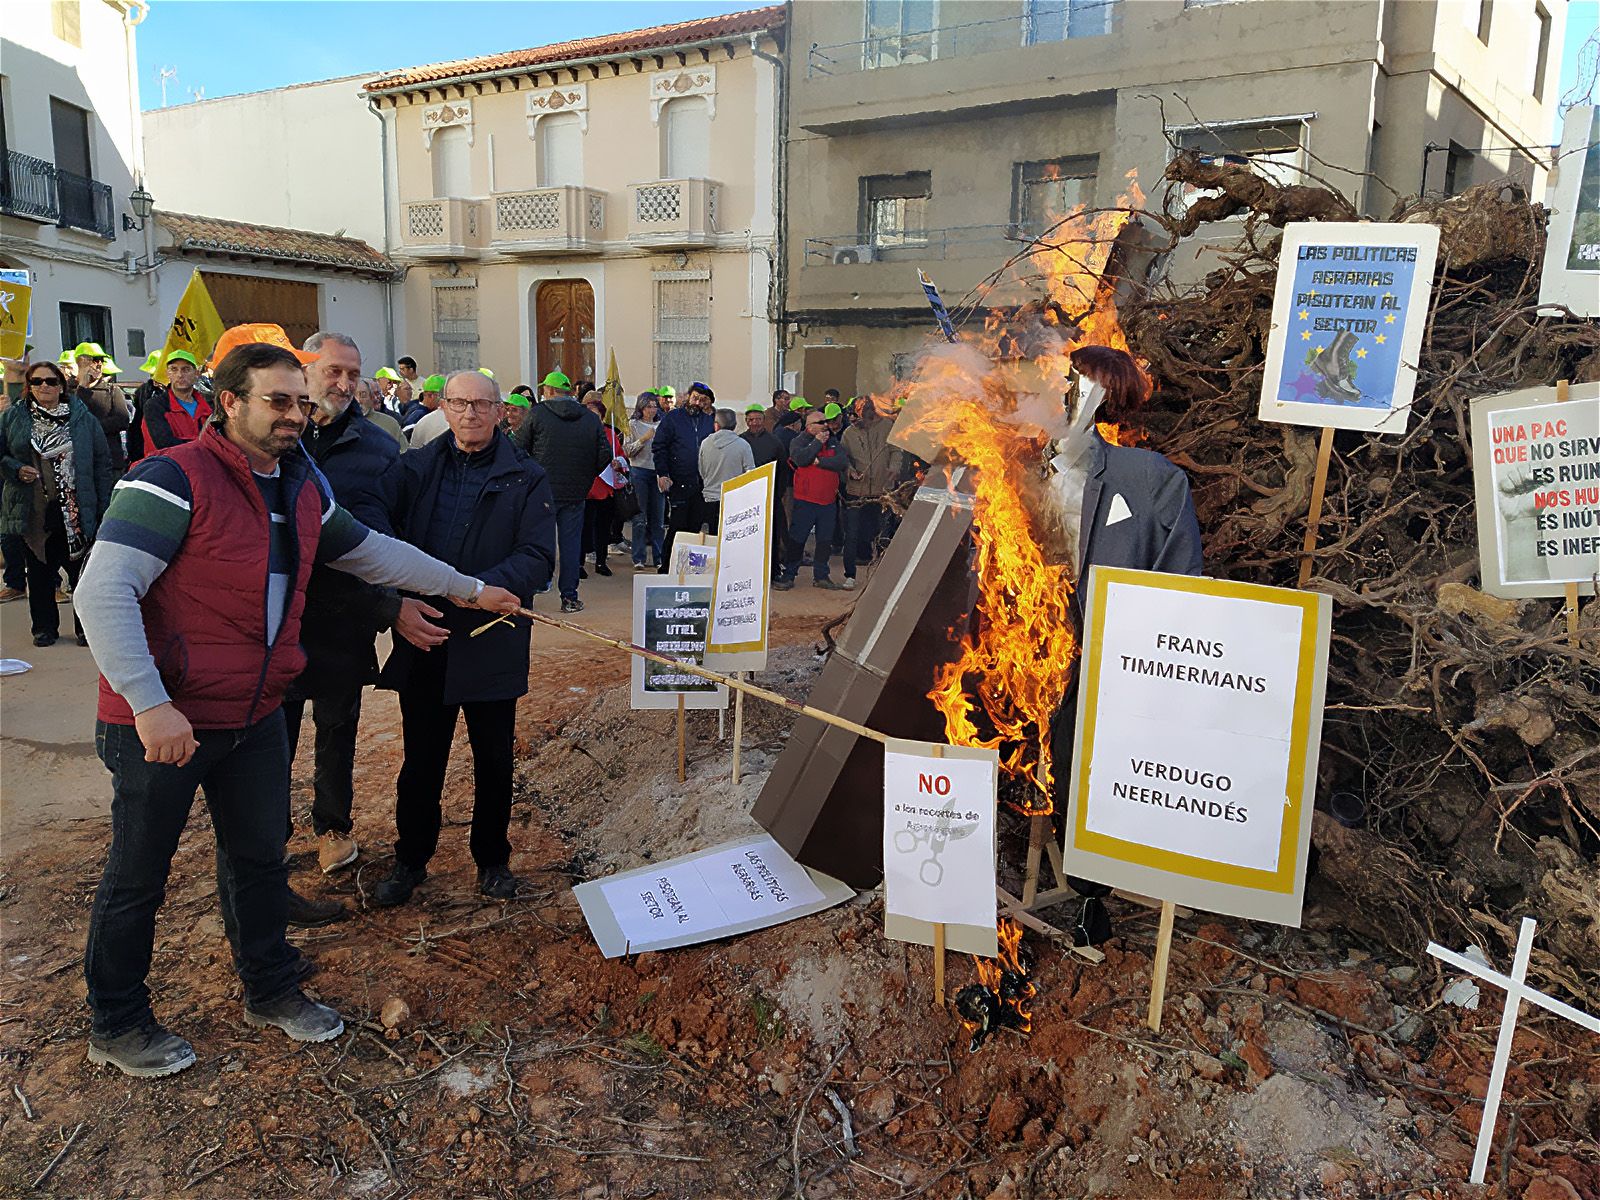 Campo español. Protesta de agricultores valencianos en solidaridad con sus homólogos franceses. 